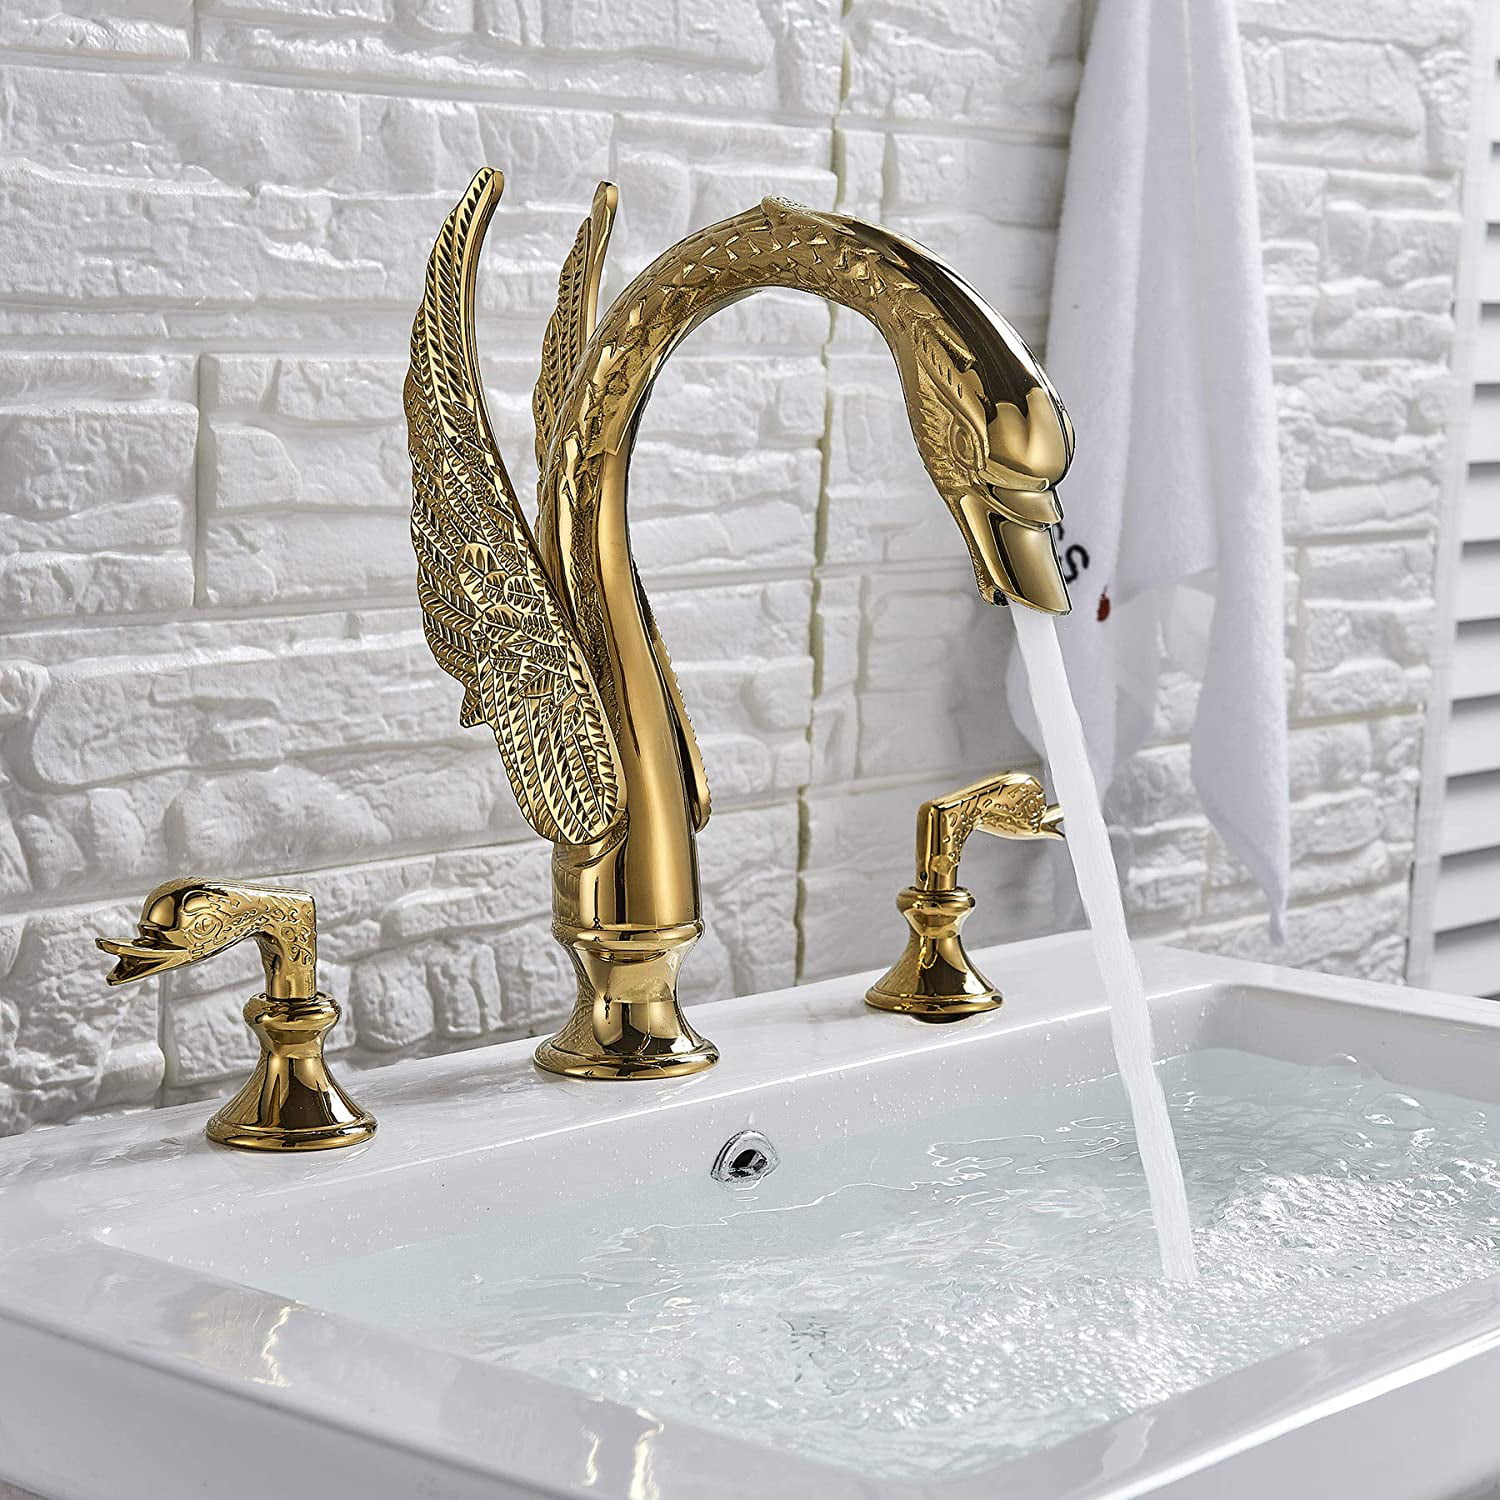 Brushed Nickel Bathroom Sink Faucet Swan Design 3pcs Dual Handle Basin Mixer Tap 